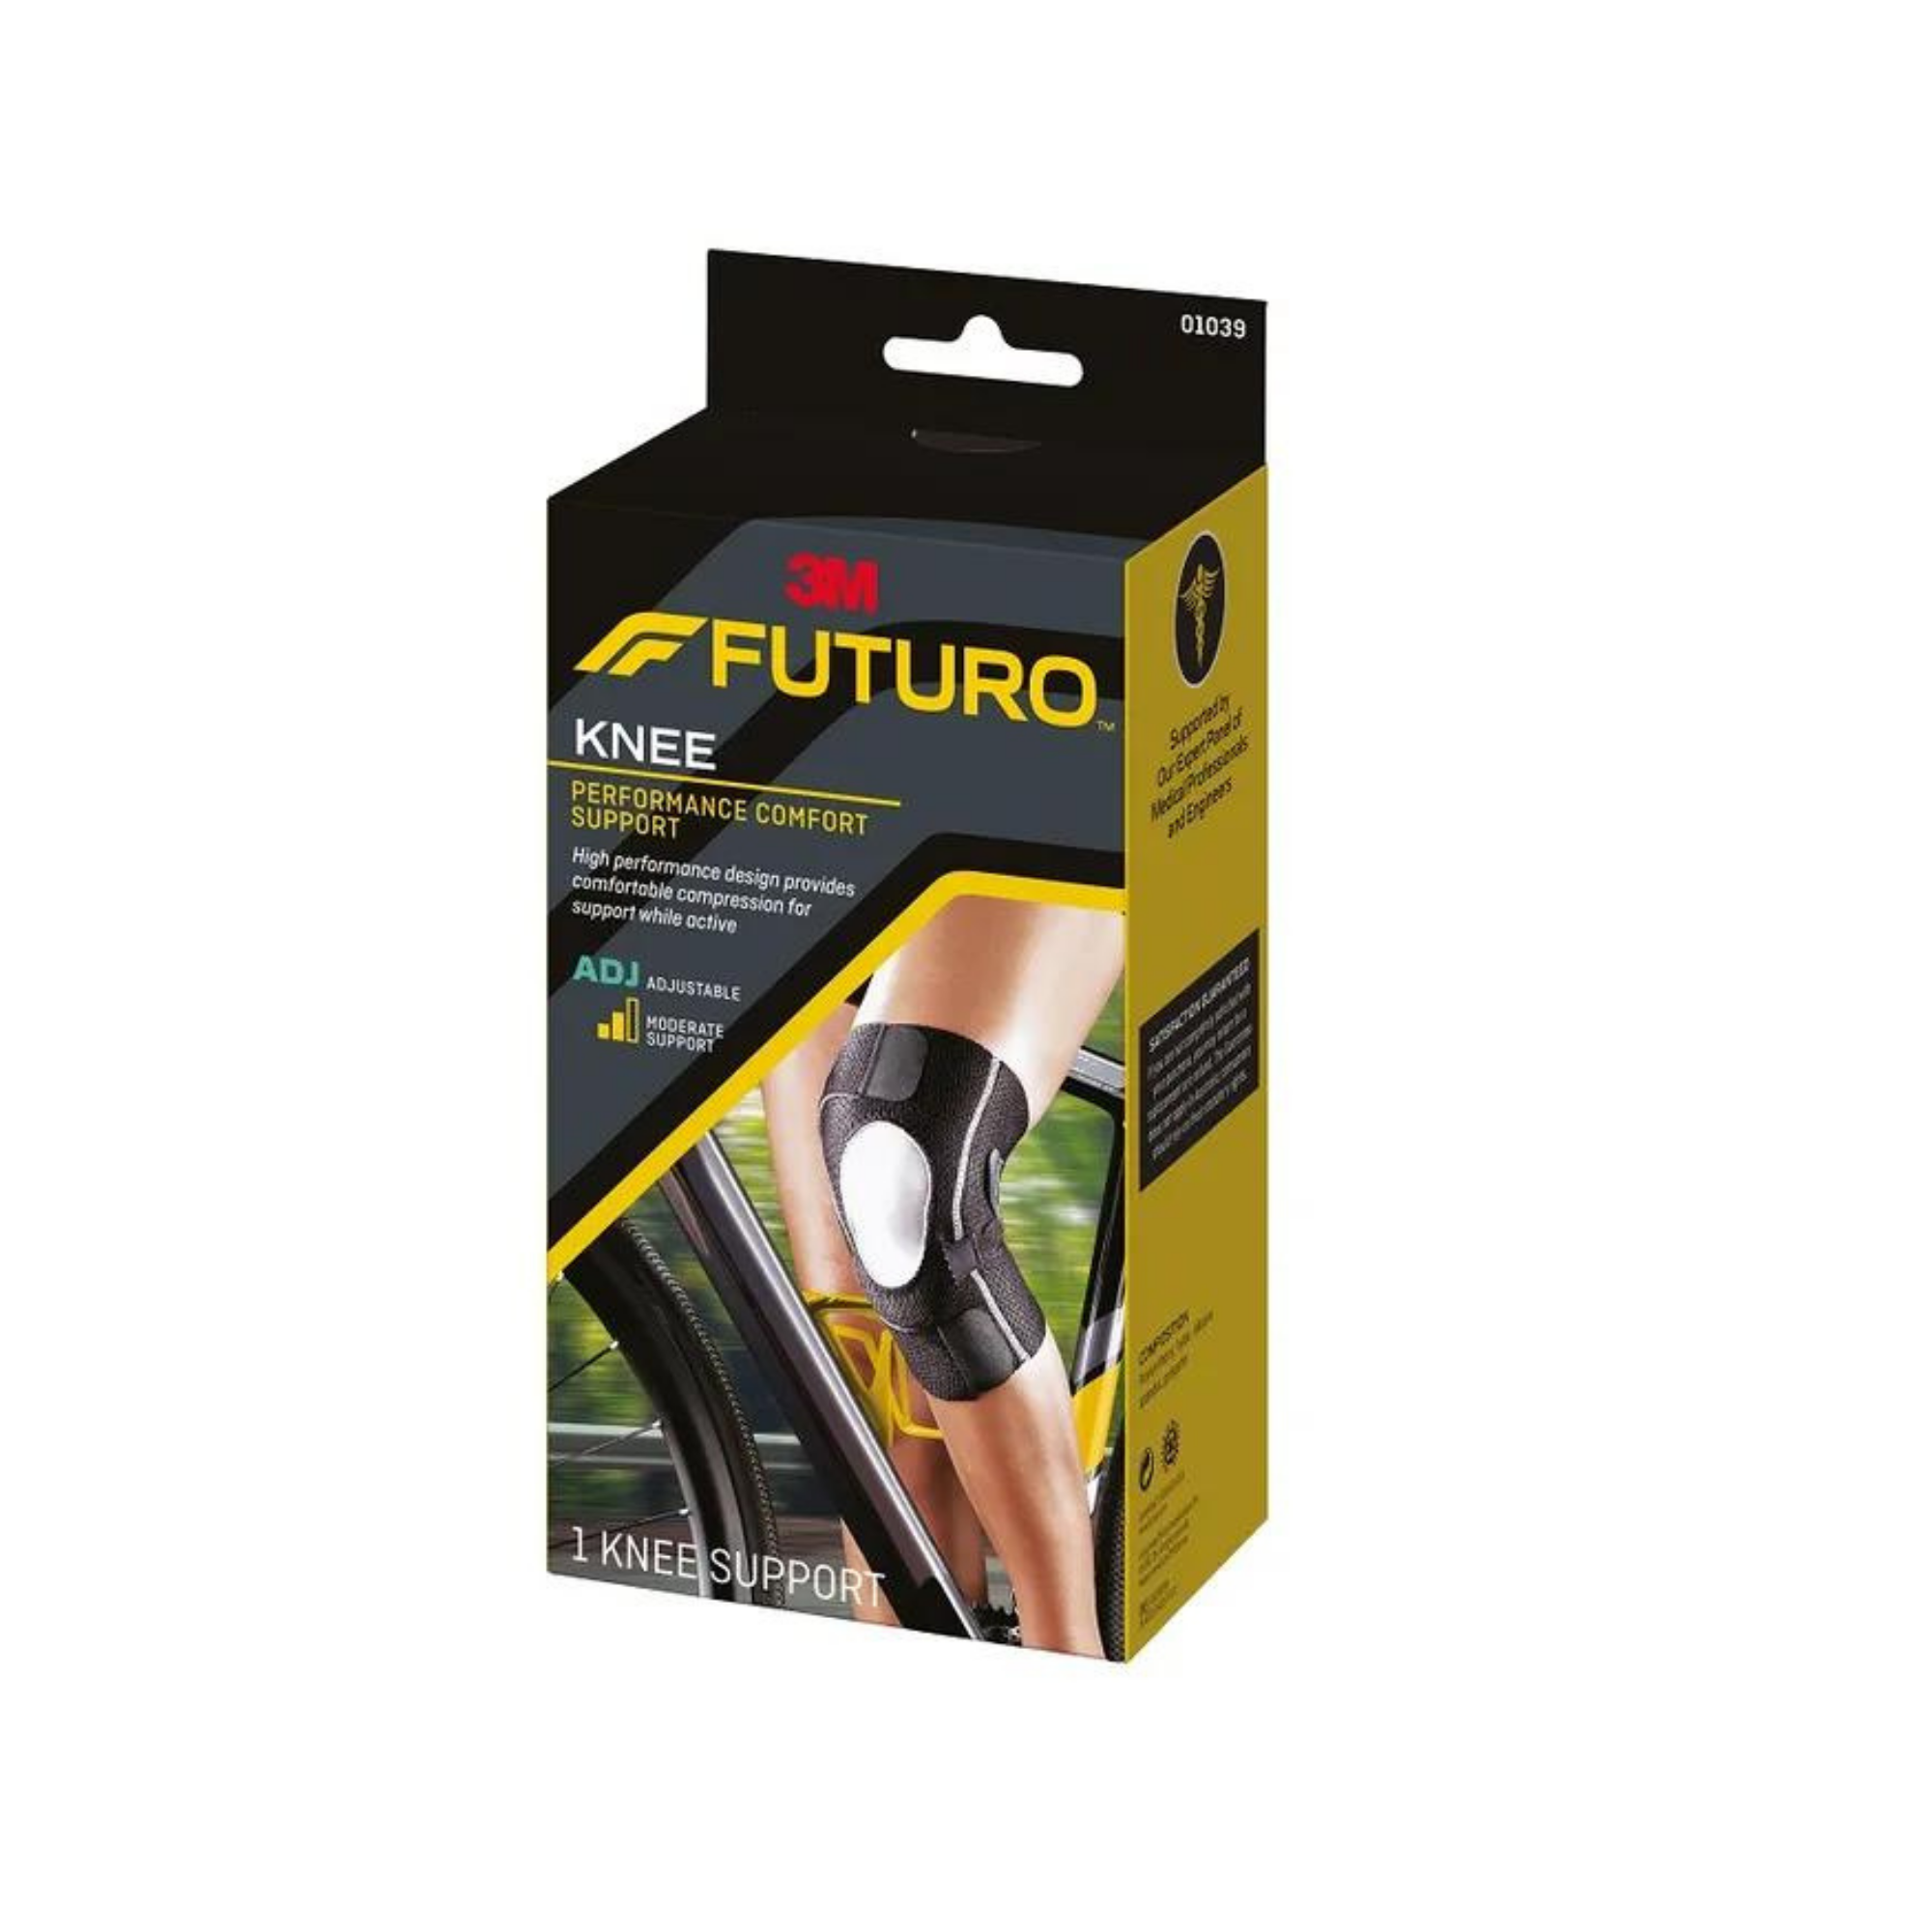 Futuro Performance Comfort Knee Support 01039ENR, Adjustable